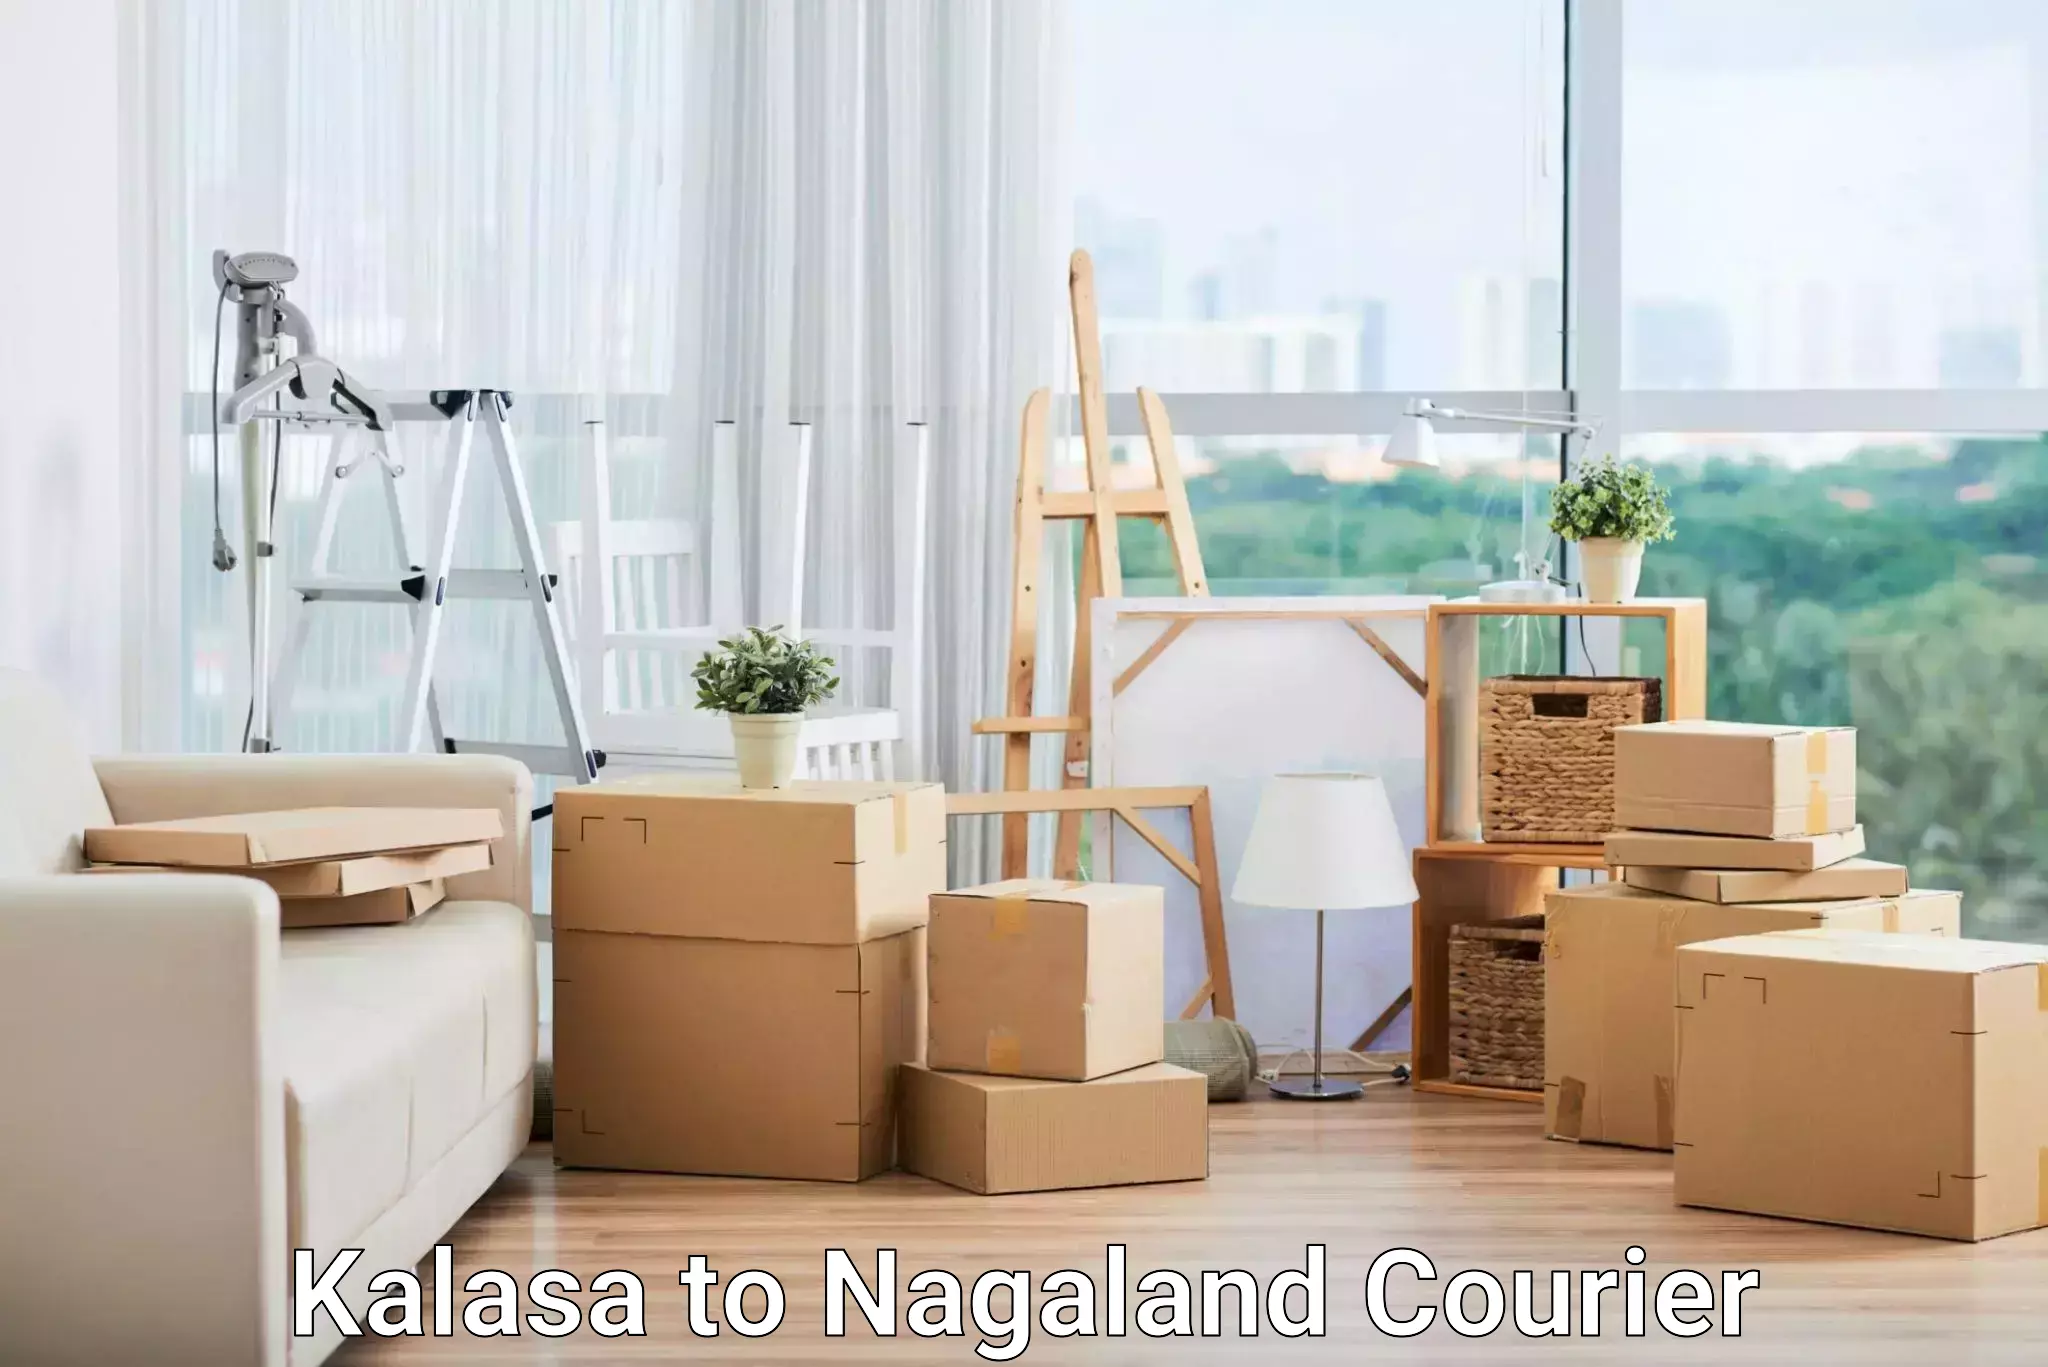 Local delivery service Kalasa to NIT Nagaland